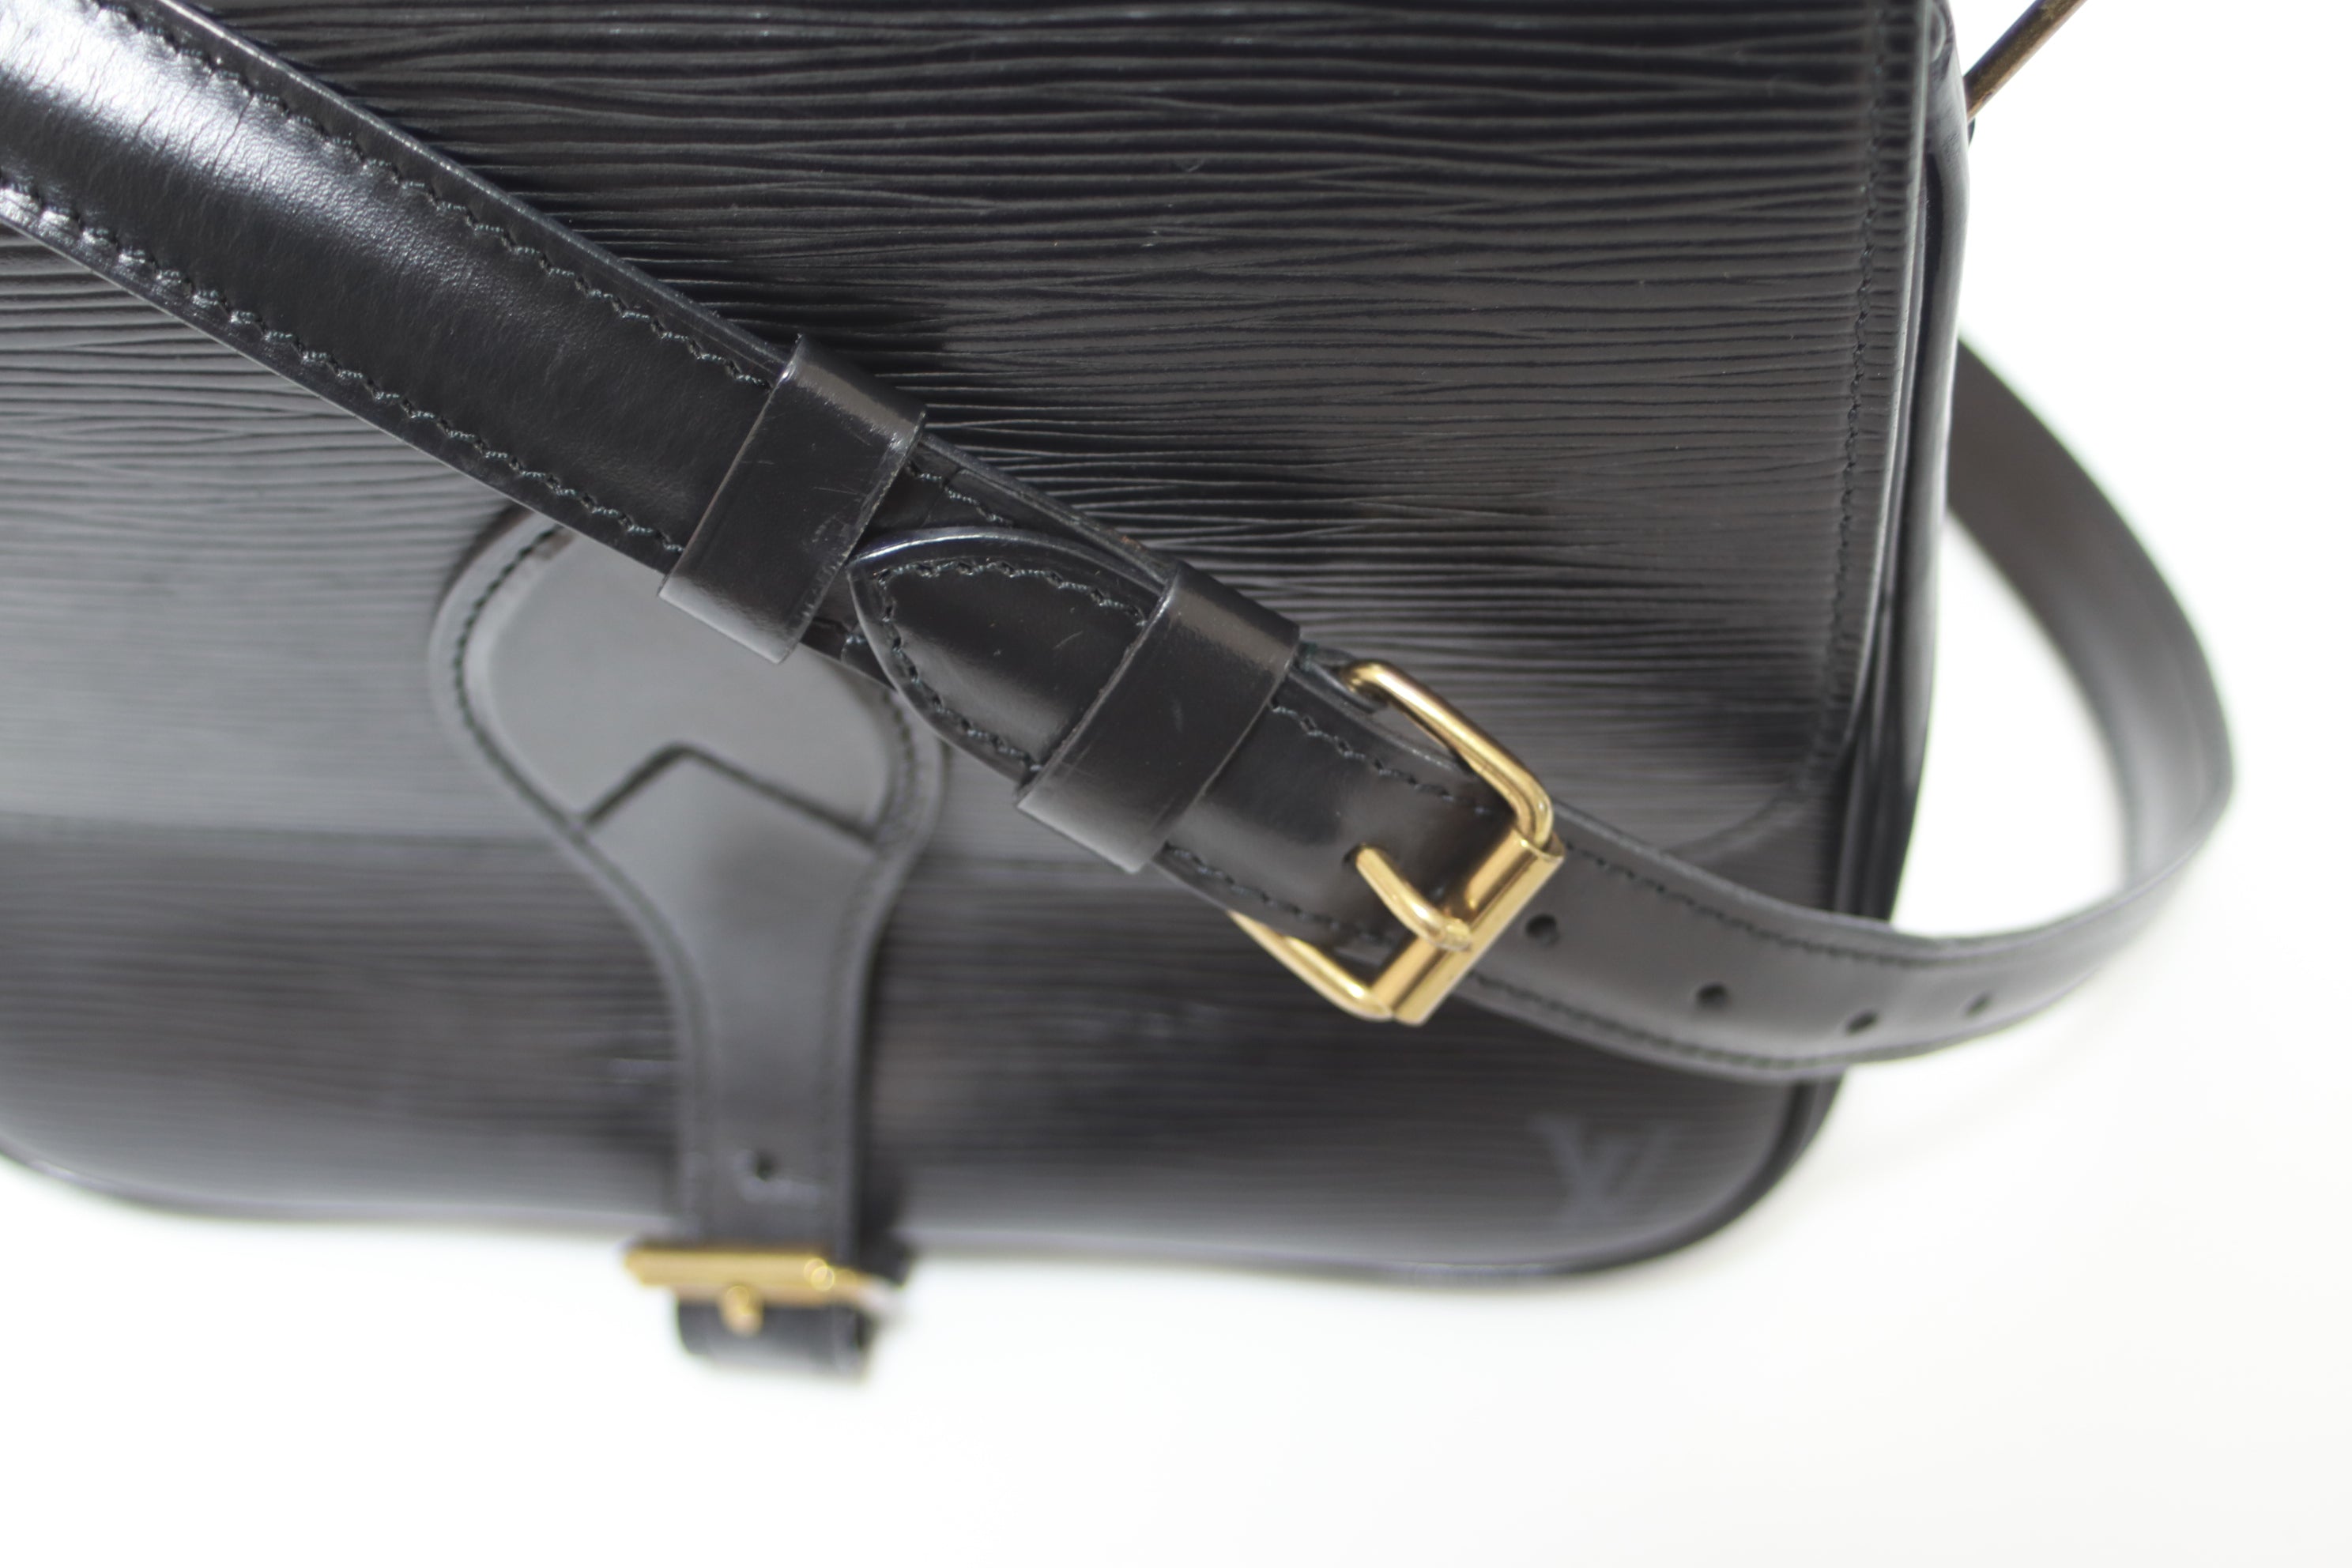 Louis Vuitton Epi Cartouchiere Shoulder Bag Black Used (7431)